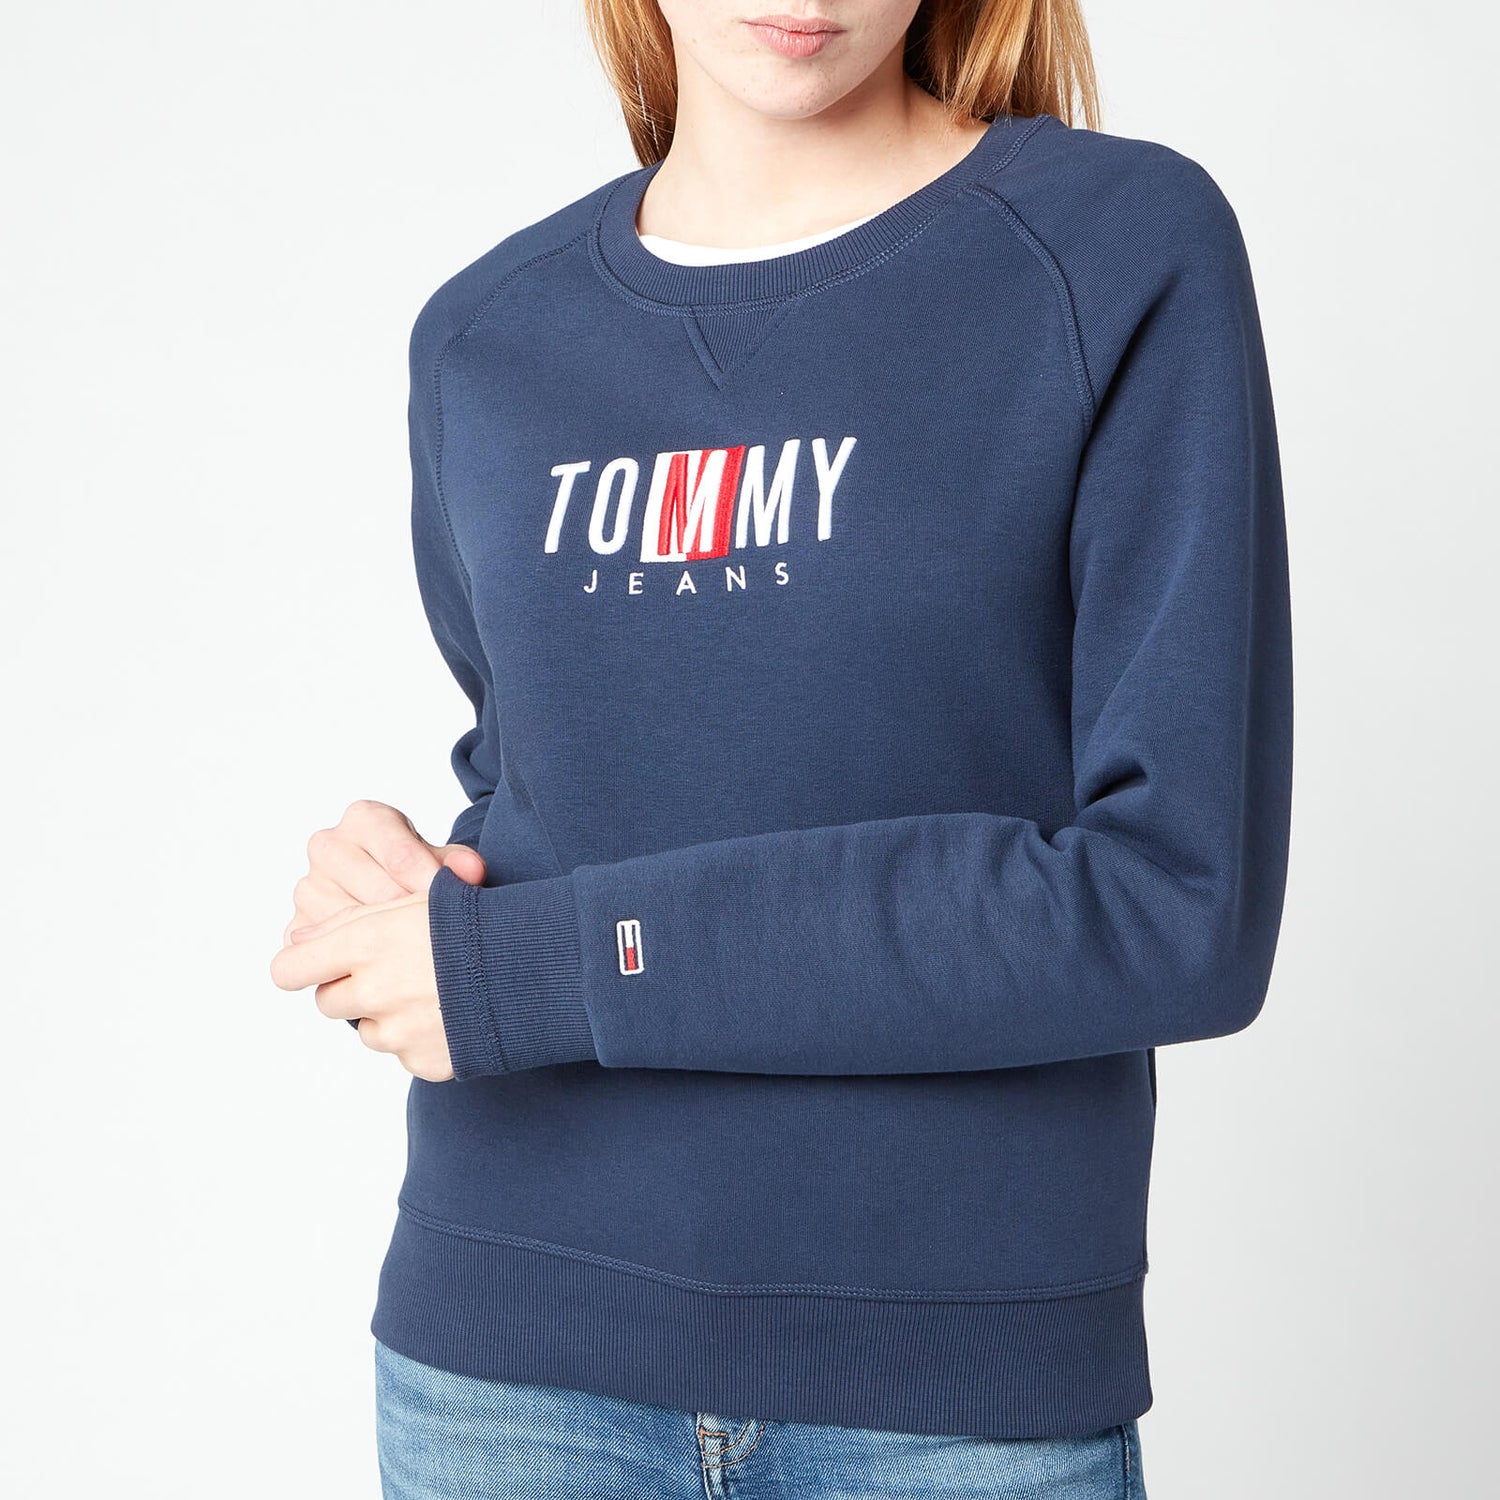 Tommy Jeans Women's TJW Bxy Timeless Sweatshirt - Twilight Navy